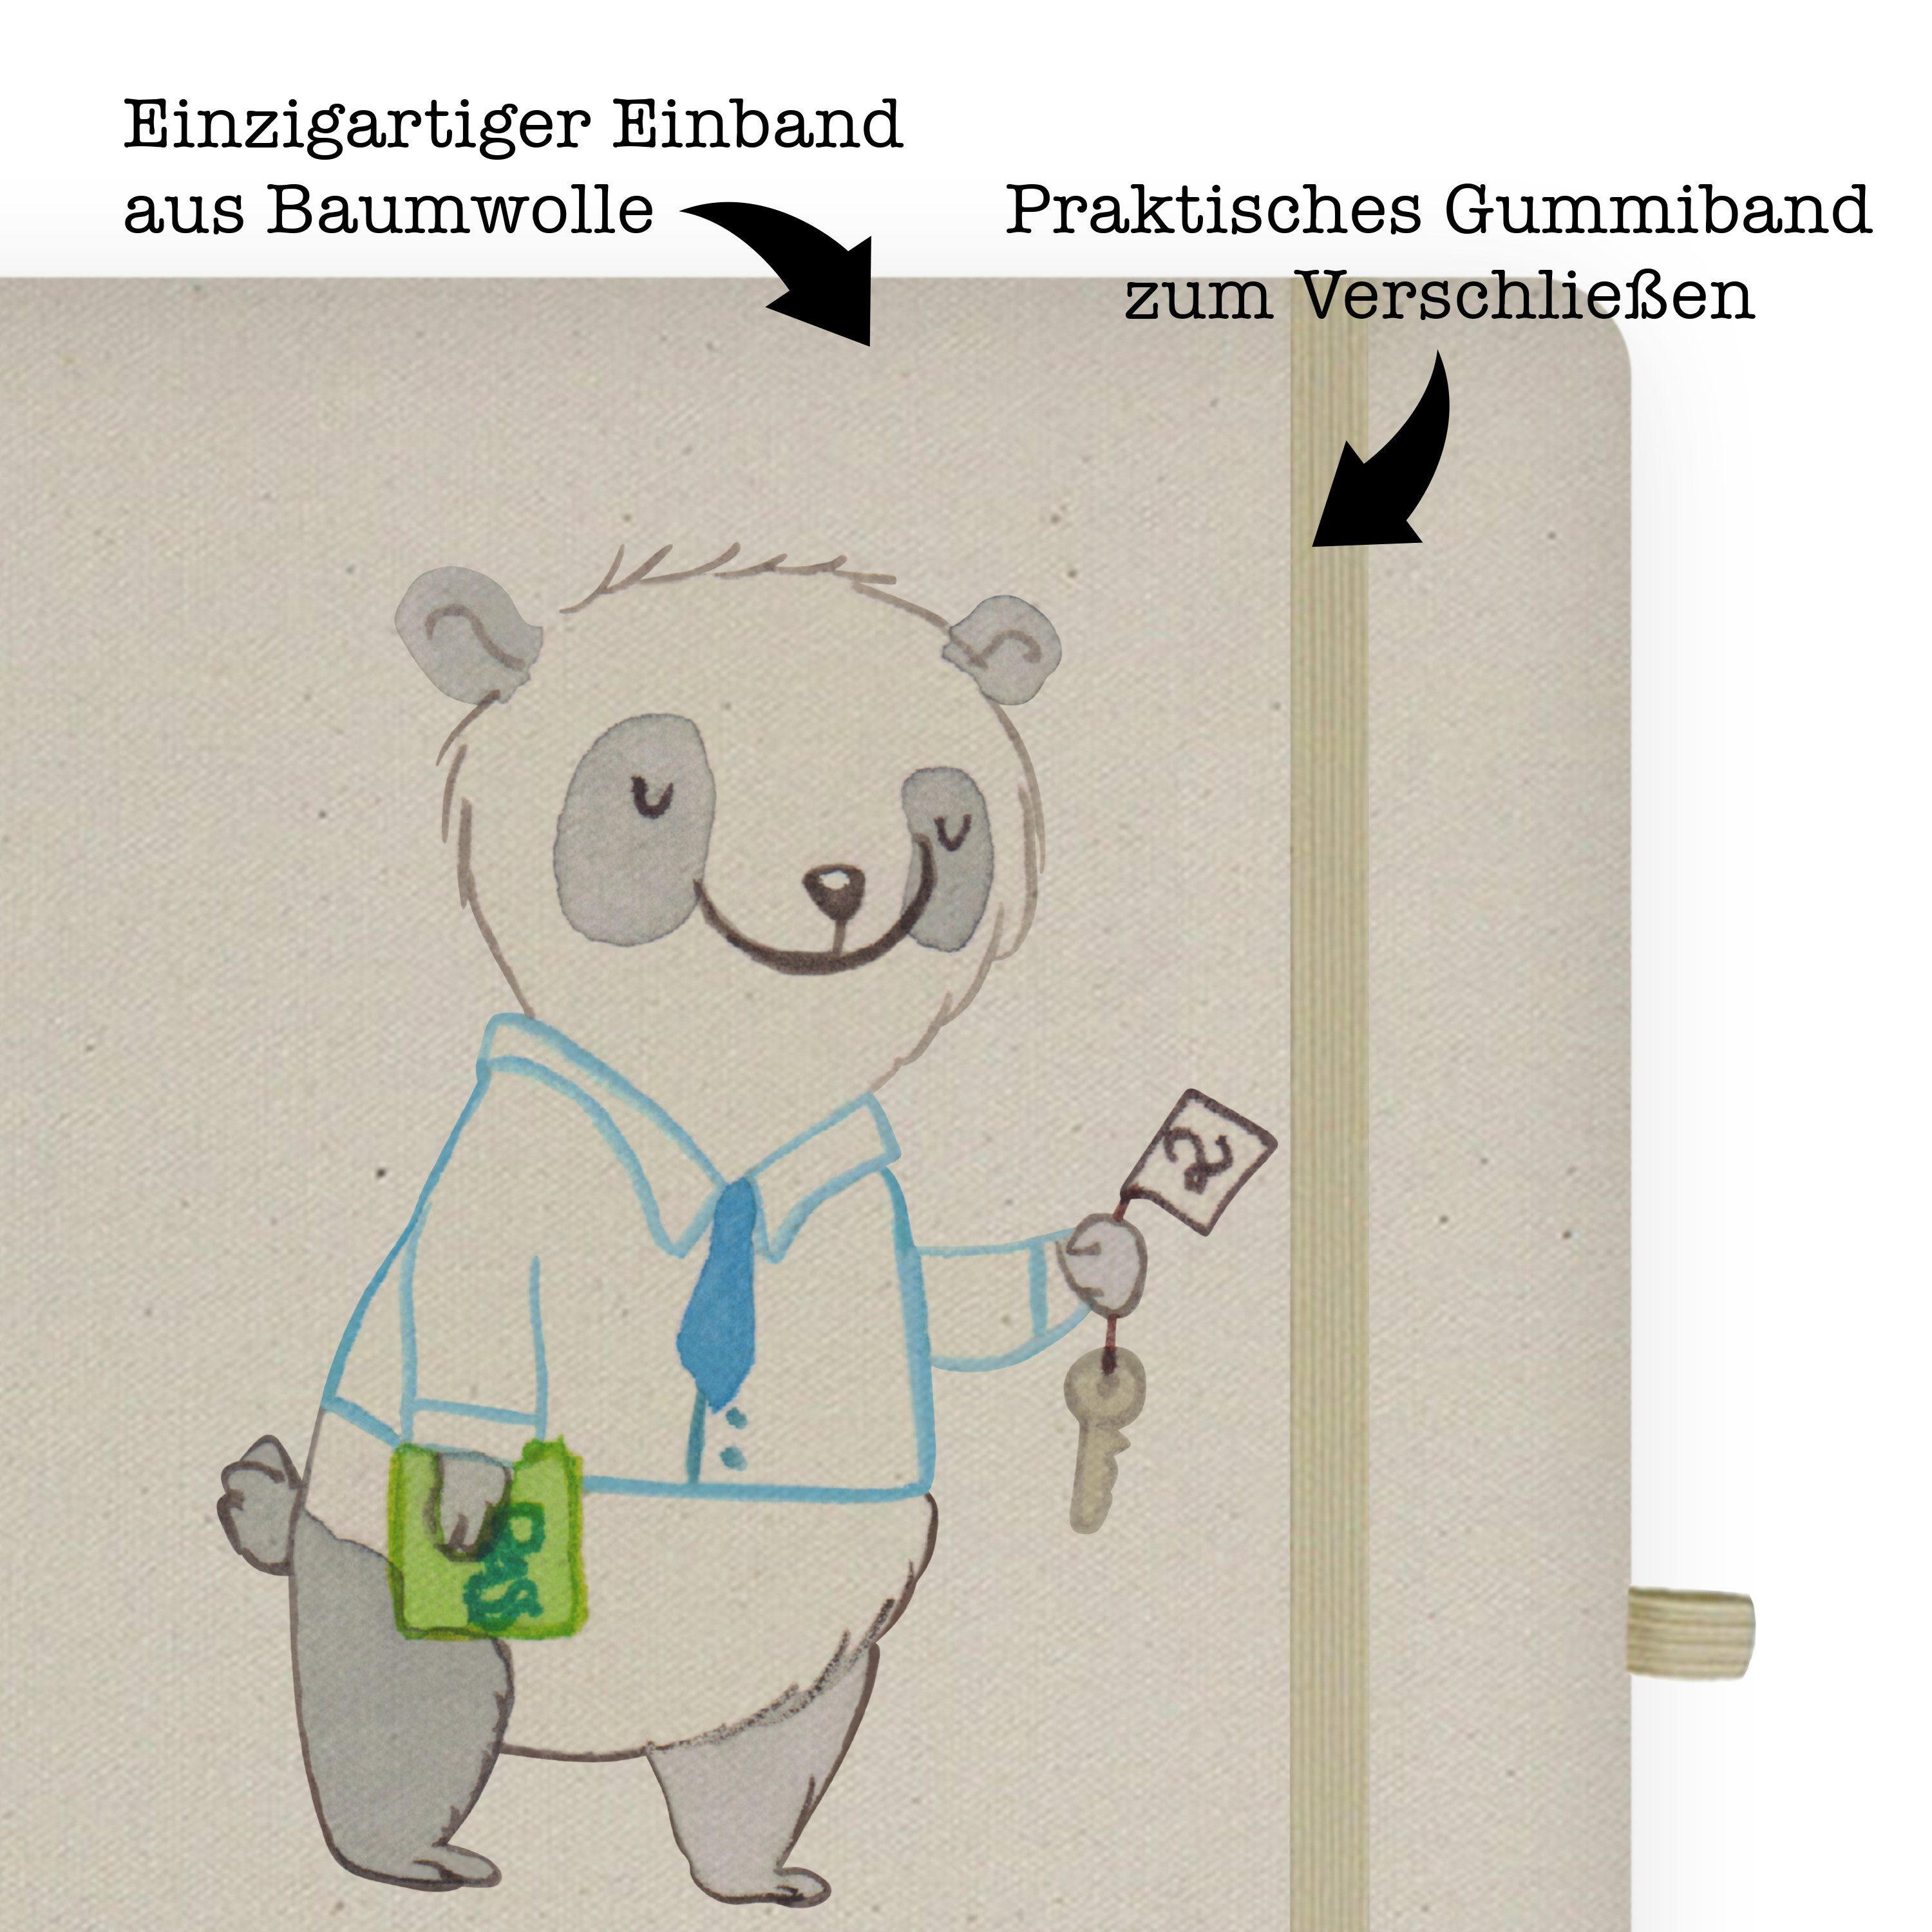 Schenke Hotelkaufmann Geschenk, Panda - Schreibheft, - Mrs. Notizbuch Mrs. Panda & Herz Mr. Transparent & Mr. mit